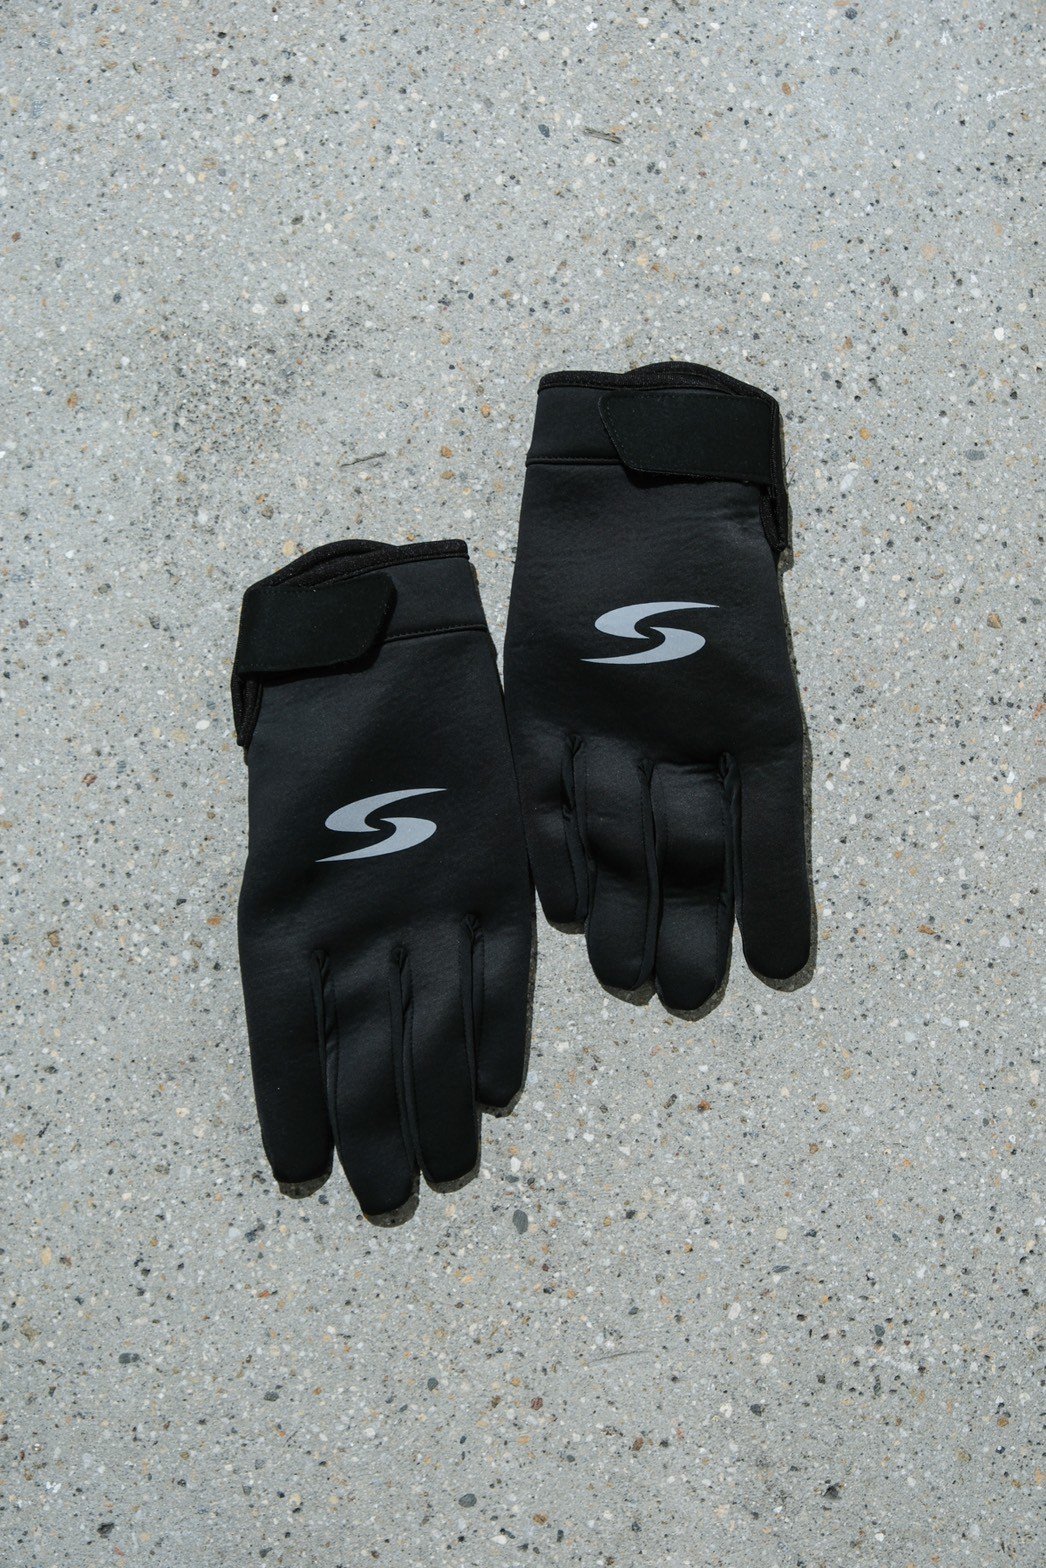 SHERMER / Sports Glove